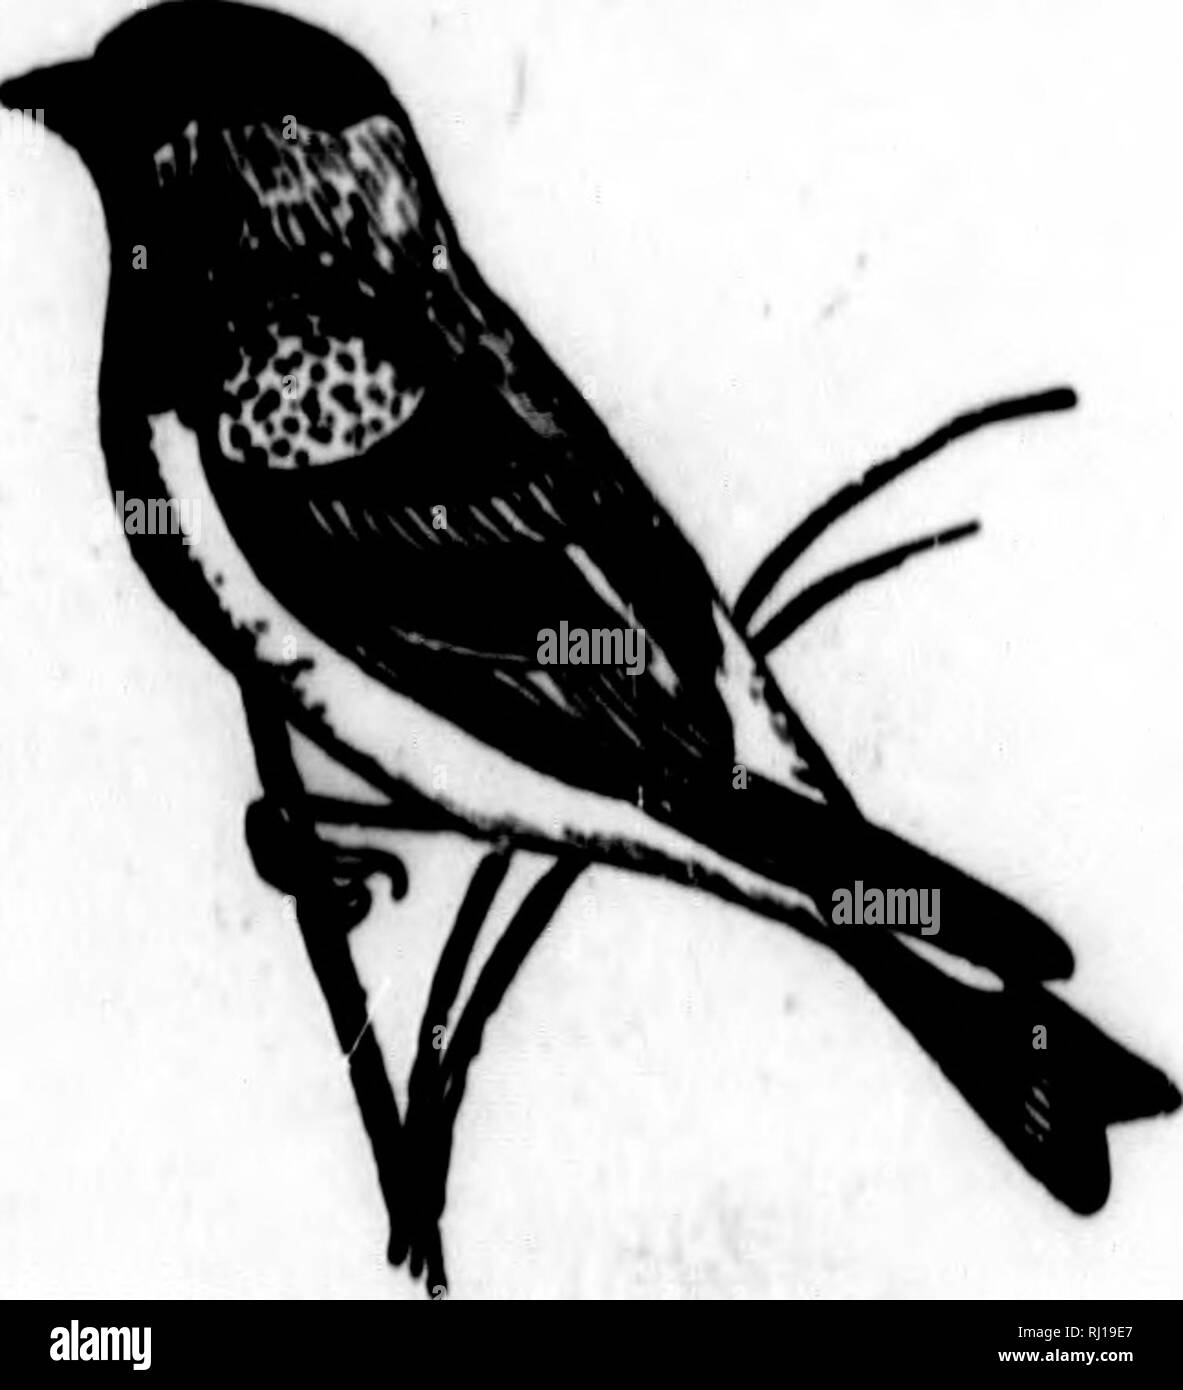 . Nester und Eier der nordamerikanische Vögel [microform]. Ornithologie; Vögel; Ornithologie; Oiseaux. aame aH. 831 - LaWMKMCK'H UOLUPINCIi NORril/^ MUHIVAS UUdfH. 363 631. LAWBBNCE" 8 Stieglitz. SpUtua lawrencti (Cm".) OeoR. Dlst.- riillfornia, im Winter southeastward nach Arizona. Lawrence's Qoldflnch li eine gemeinsame Vogel in Cali-fornia, wo es im Überfluss, Rassen, placinx Ni&gt; 8 t in der Regel in der Nähe der Extremität Extremität eines Marcena o; (|{, wo es Schleier verborgen und schwer zu finden. Ich hey Nest in AP-il, Mai und Juni. Professor Immer flrst tiiann sagt, dass er den vollen Satz der Eier in Ven-tura County gefunden, Stockfoto